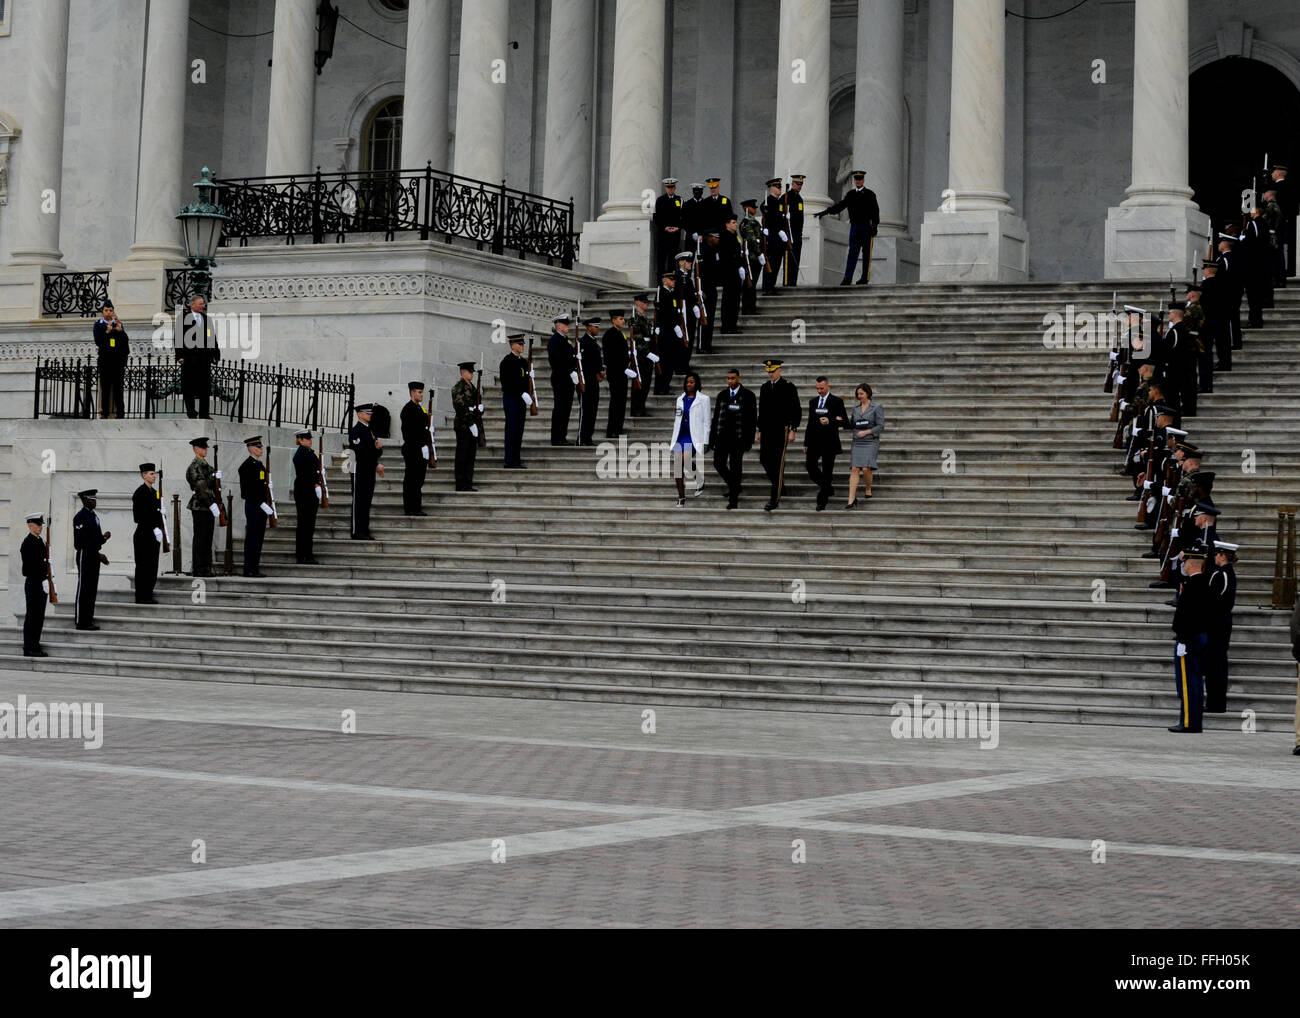 Eine gemeinsame Ehre wache salutiert als Rollenspieler vertritt der Präsident, Vizepräsident und deren Ehegatten steigen die U.S. Capitol Schritte während der Amtseinführung Generalprobe in Washington, D.C. Stockfoto